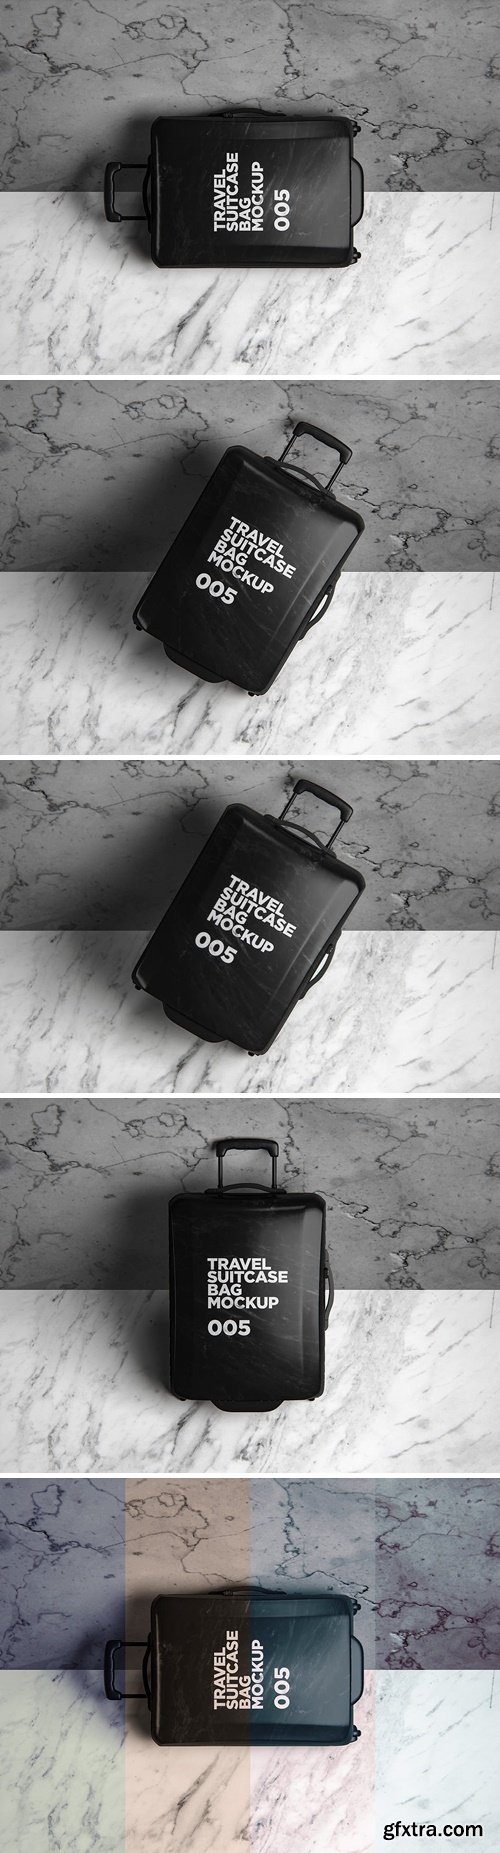 Travel Suitcase Bag Mockup 005 J7ZAEFW